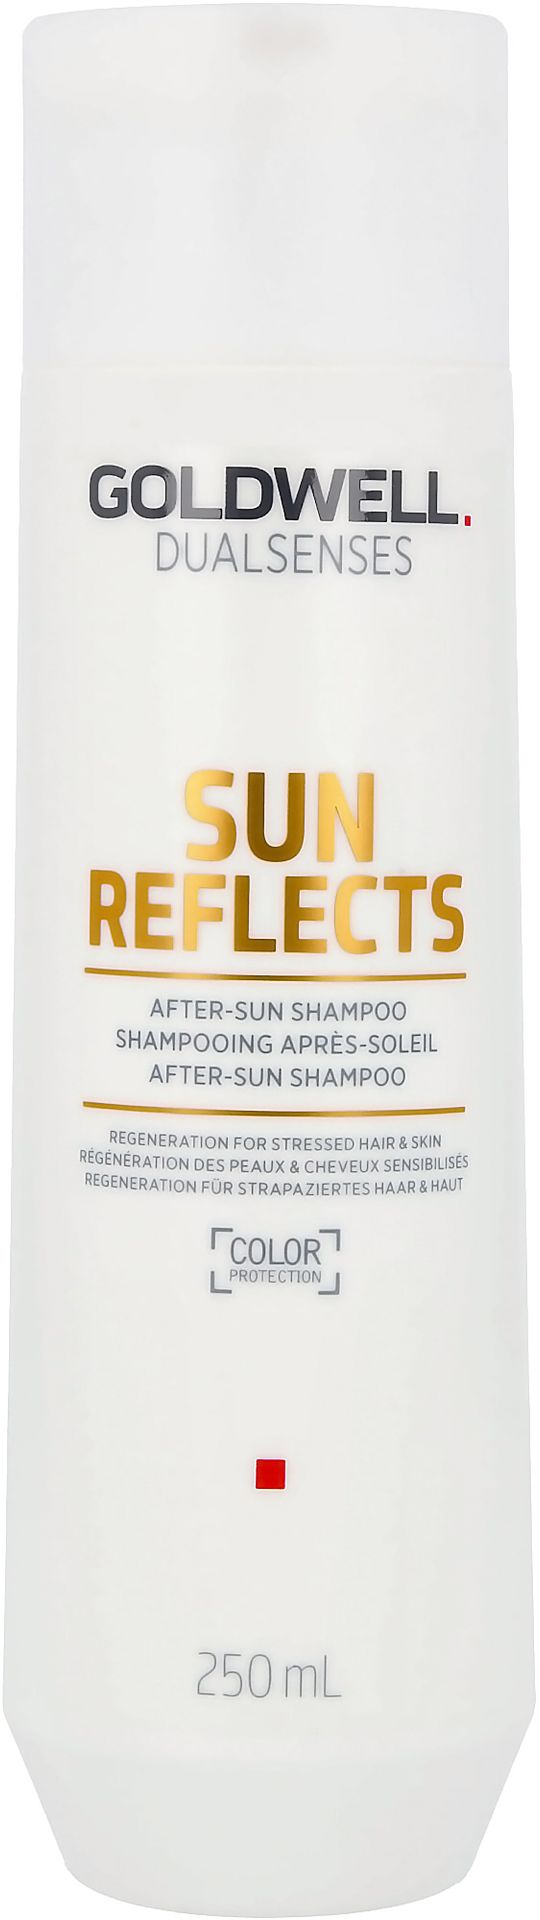 Goldwell Sun Reflects szampon po kąpieli słonecznej 250ml